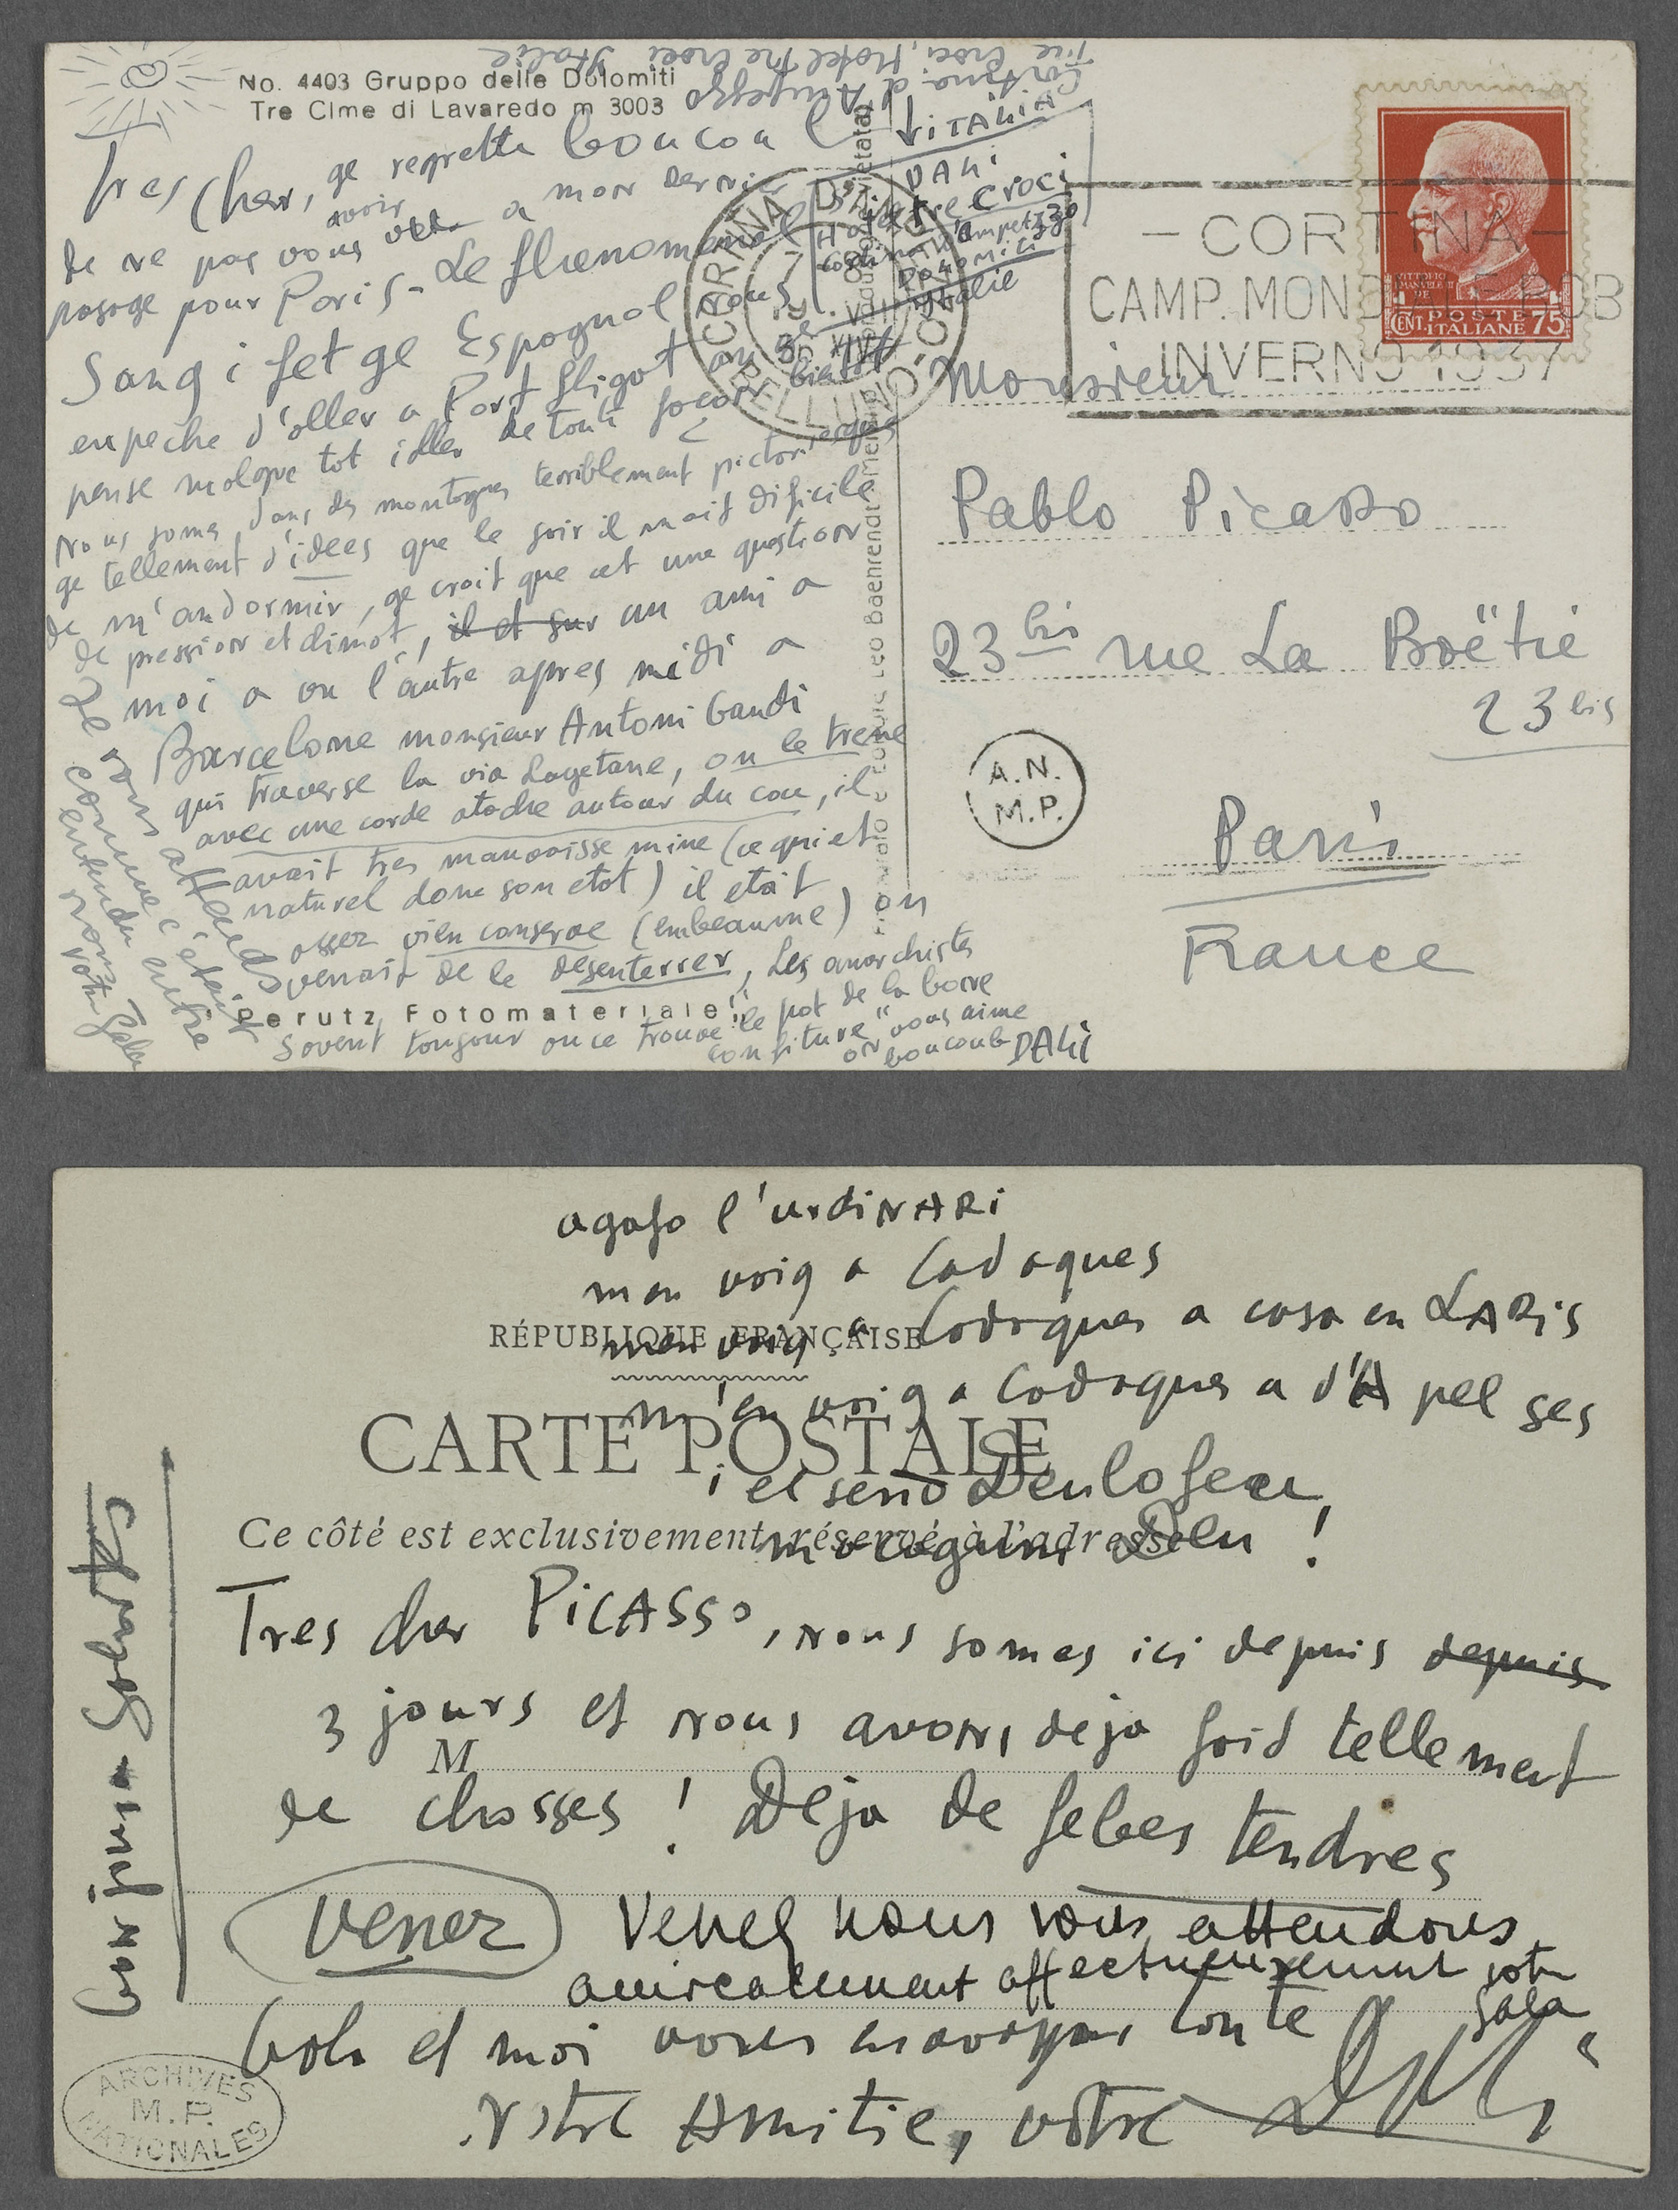 Cartes postales de Gala et Salvador Dali à Pablo Picasso - 515AP/C/35/2/6;515AP/C/35/2/7 - 03-009235